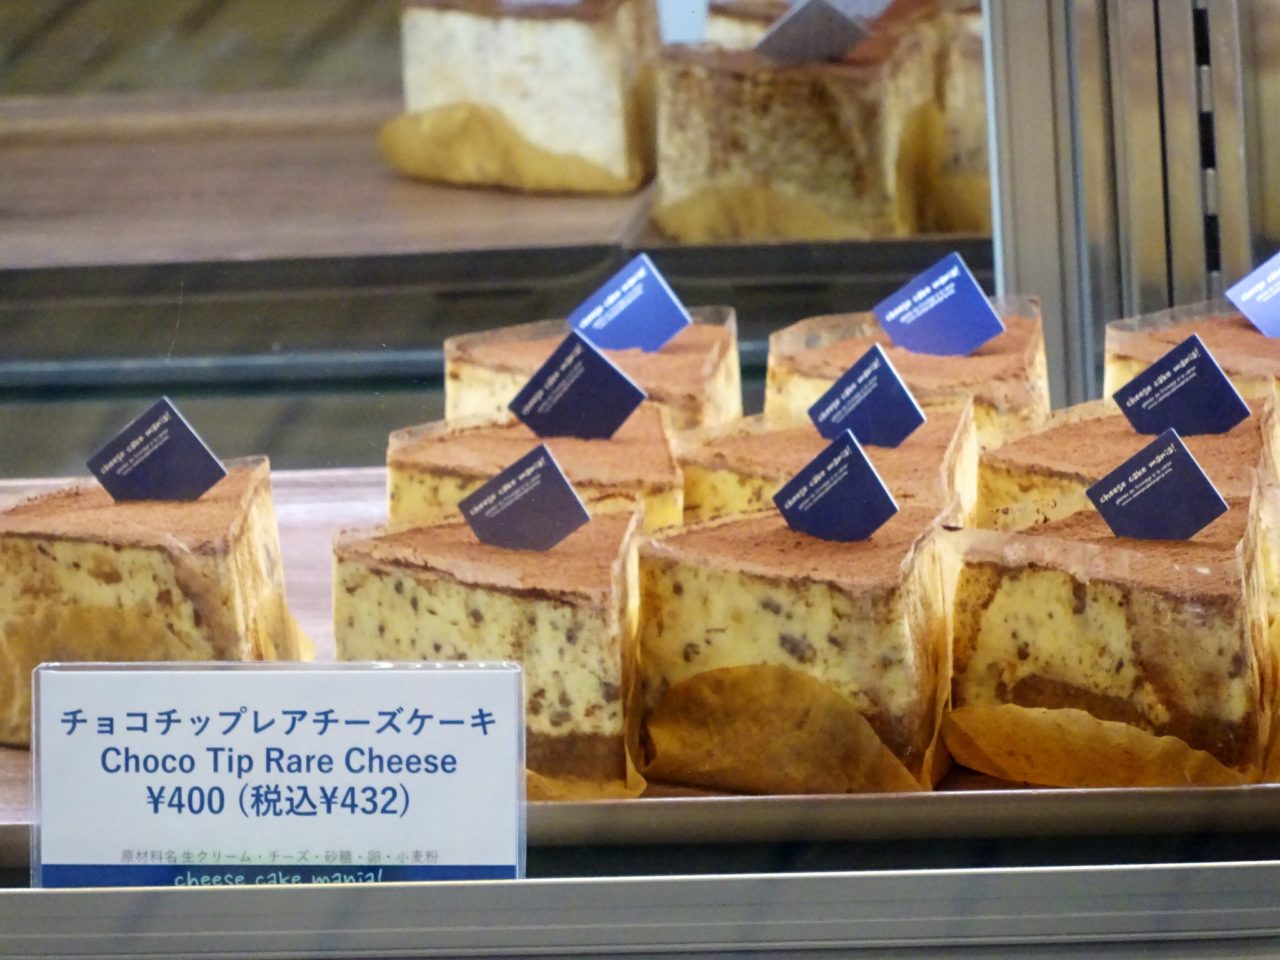 チーズケーキ専門店 チーズケーキマニア が大須商店街にオープン おいでよ名古屋の食べ歩きログ